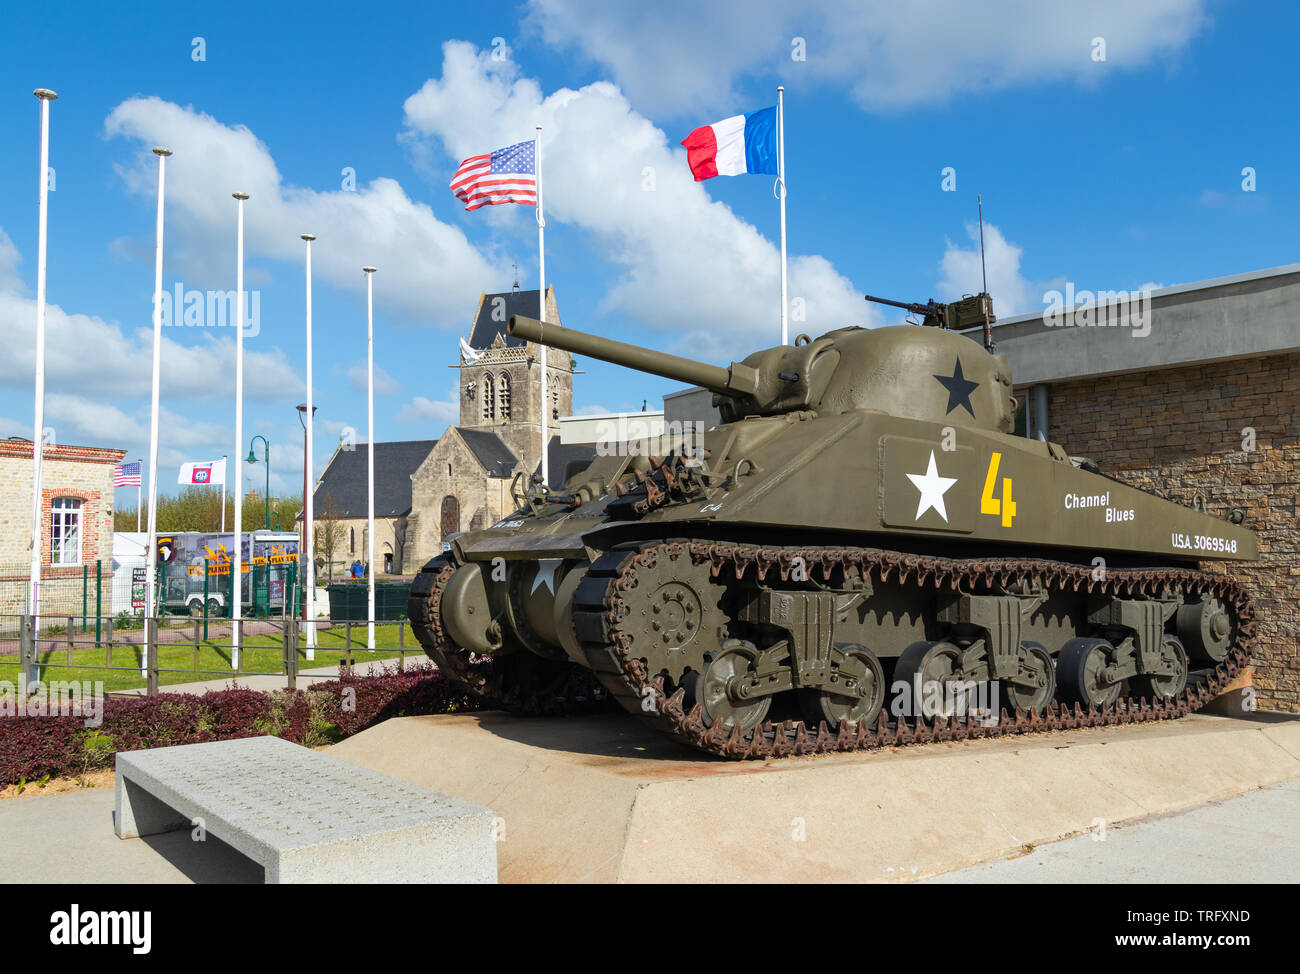 Sainte Mere Eglise, Frankreich - 5. Mai 2019: M4 Sherman Panzer an das Airborne Museum, mit der Kirche von Sainte Mere Eglise, wo ein Soldat hängt Fro Stockfoto